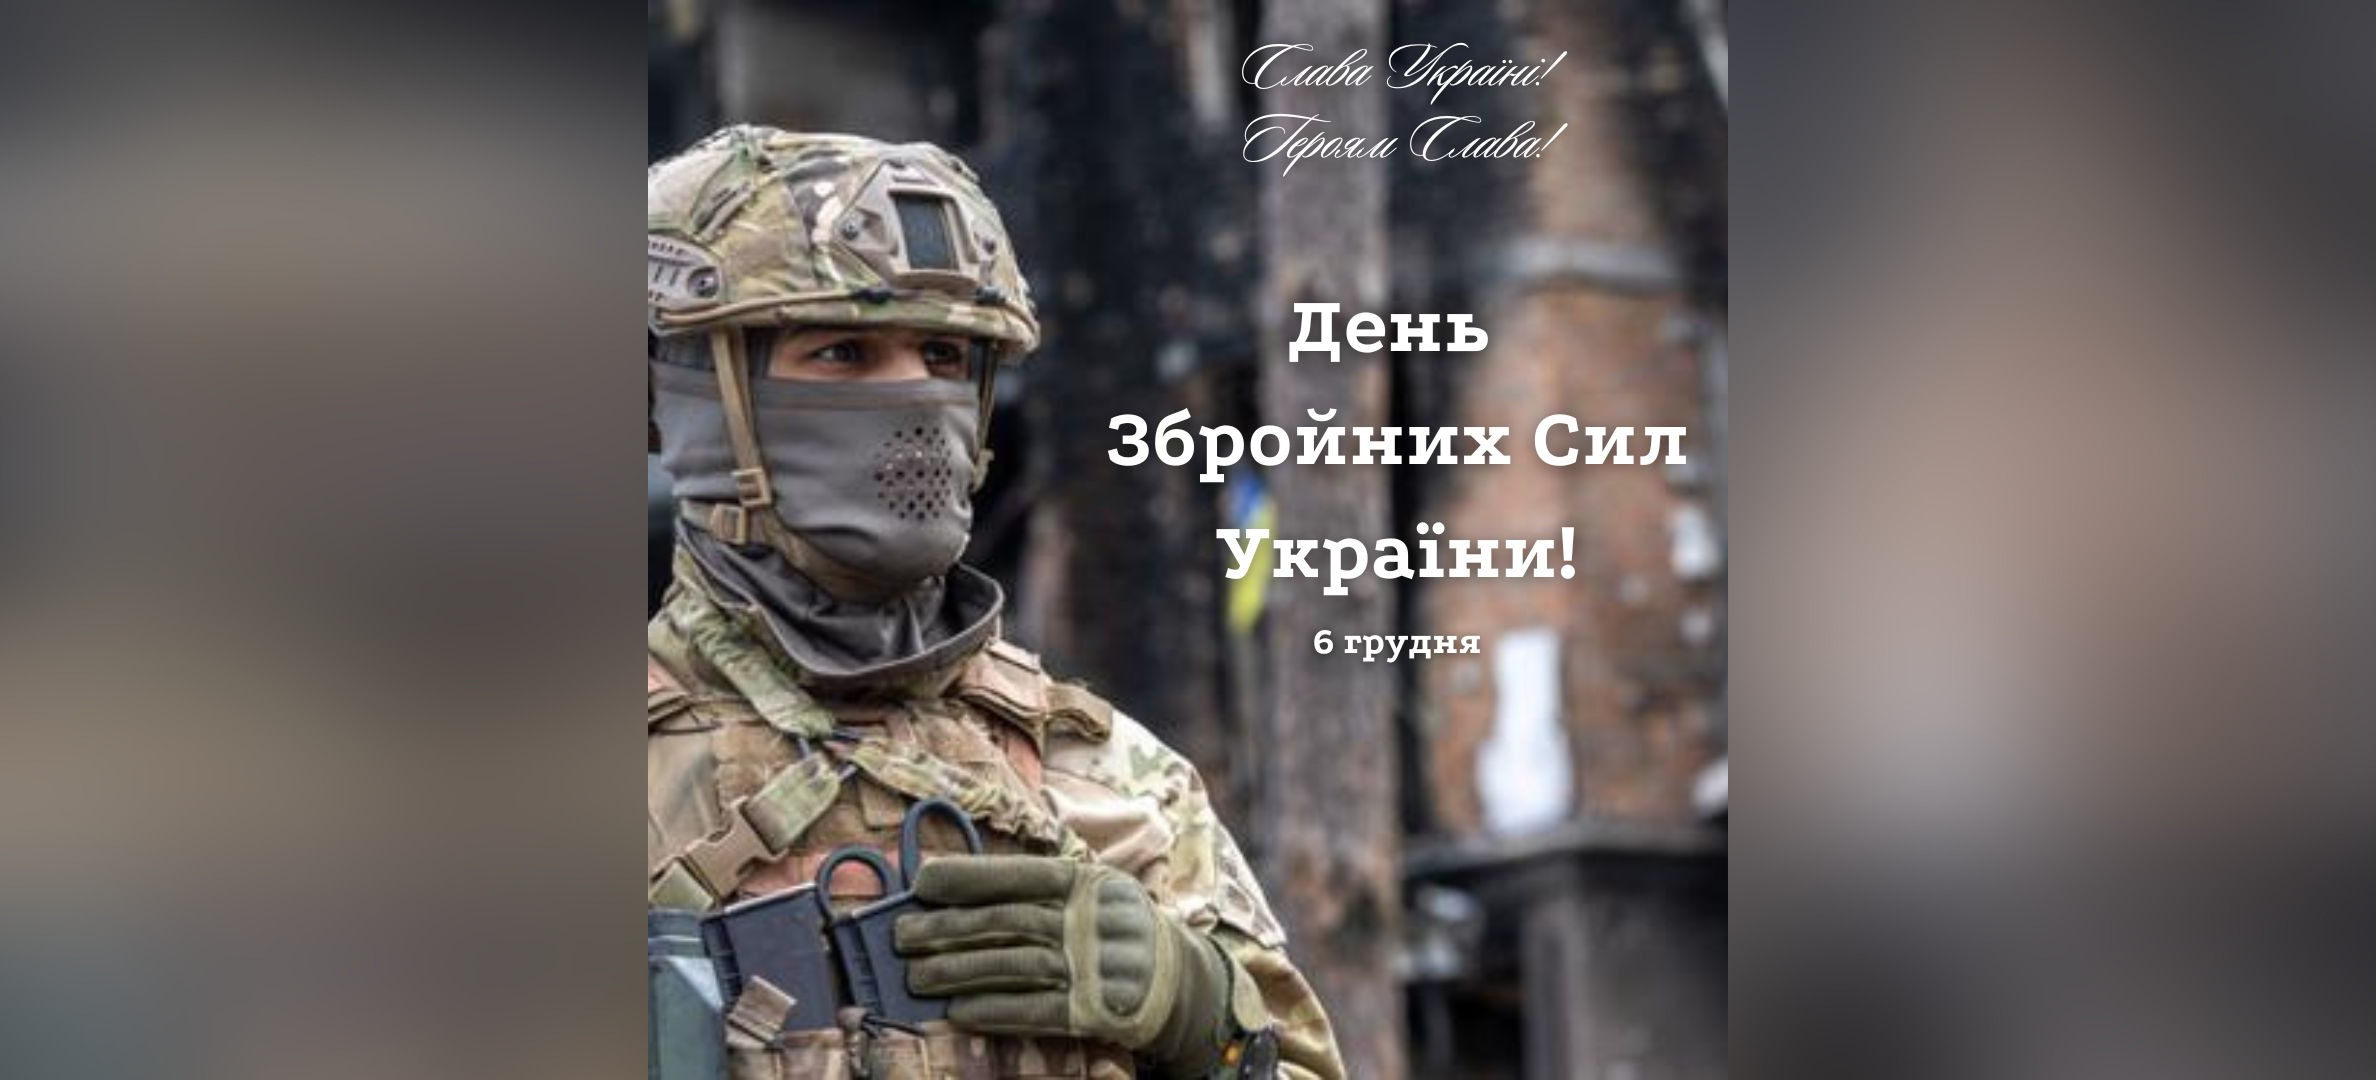 День Збройних Сил України!